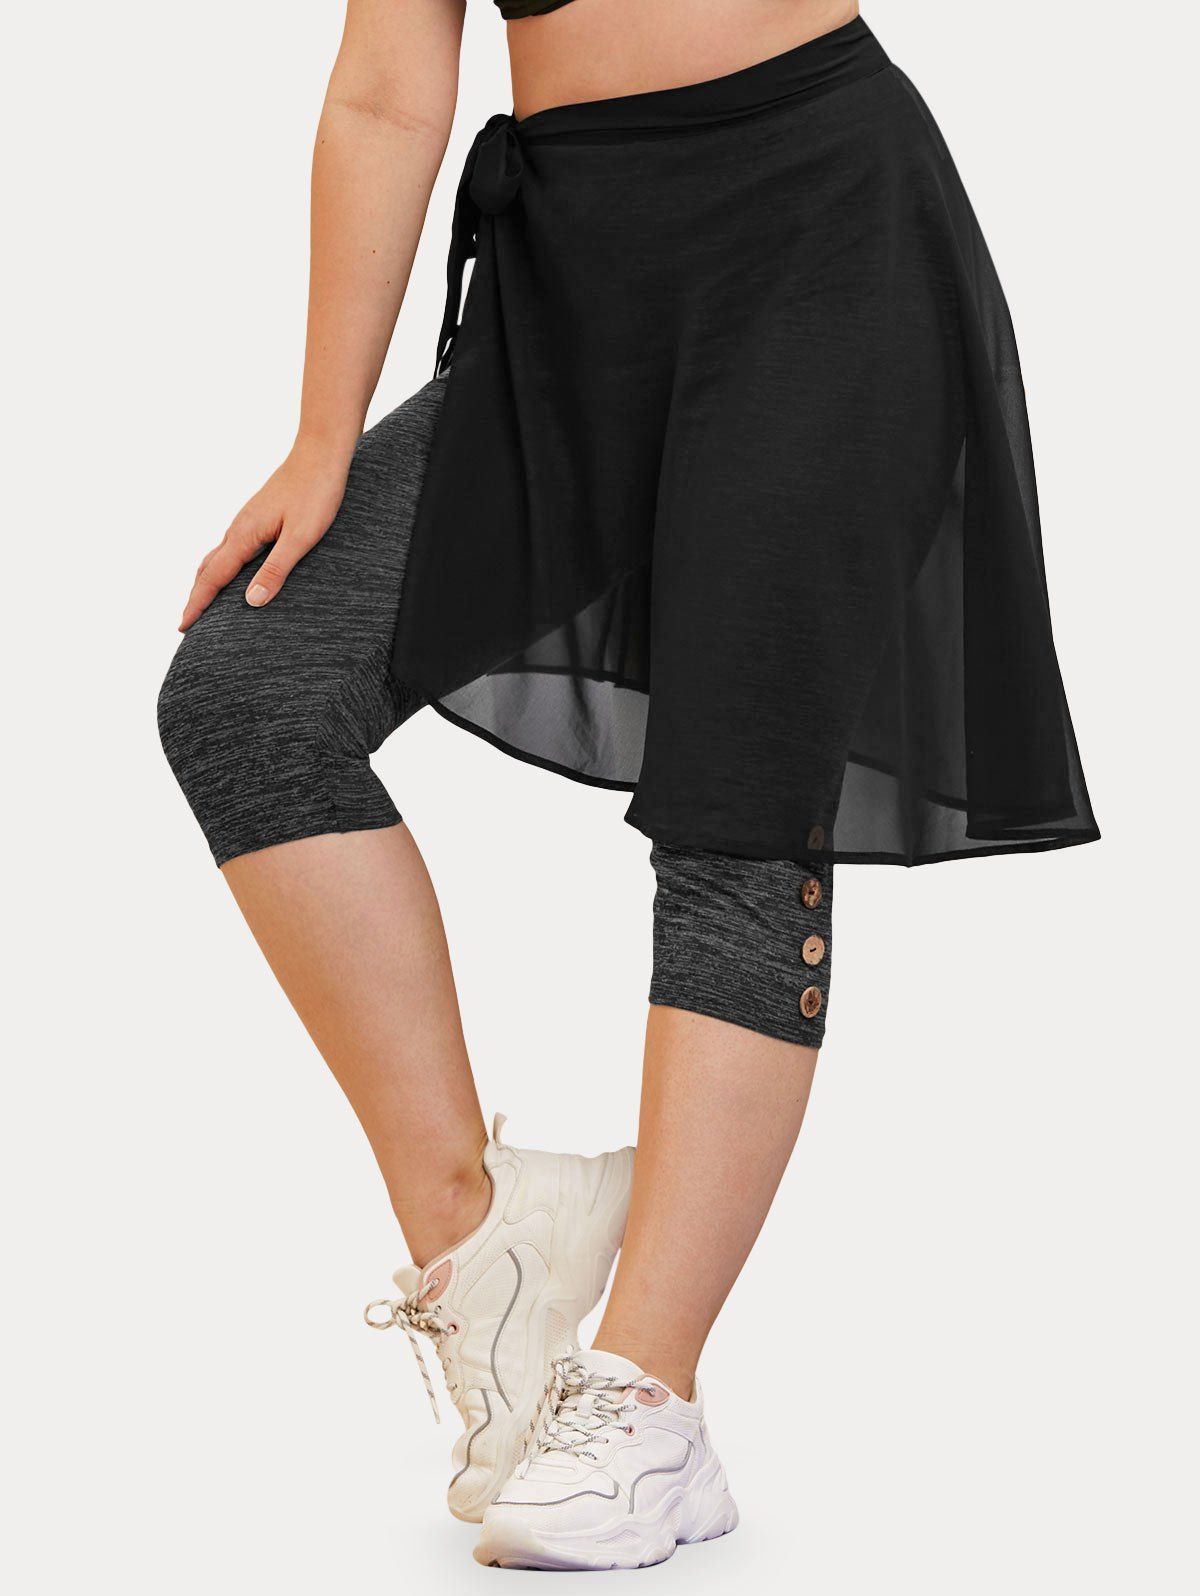 Plus Size Space Dye Capri Leggings and Wrap Skirt Set - BLACK 5X